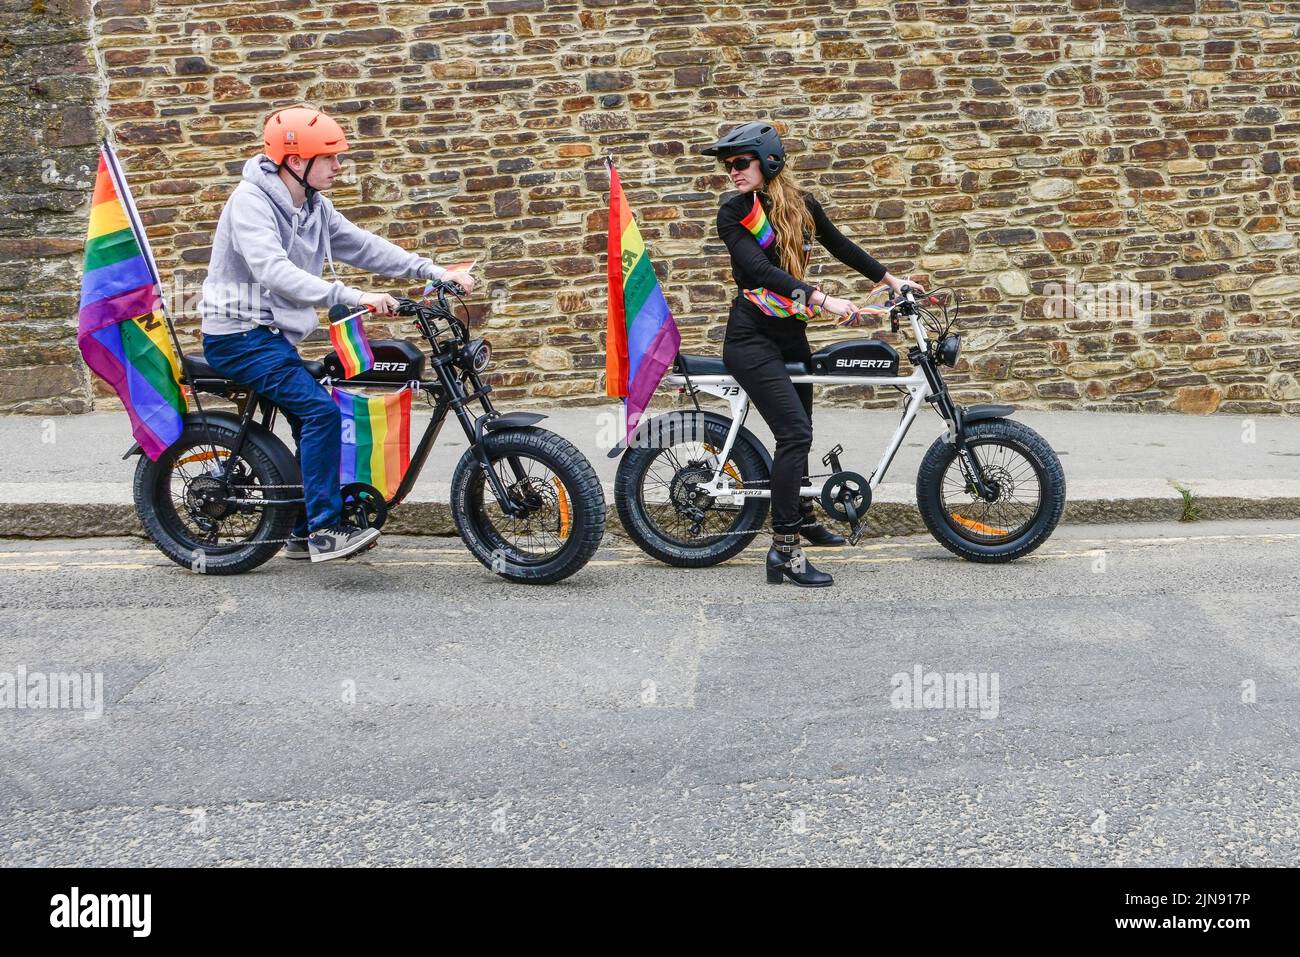 Les coureurs utilisant des vélos électriques Super 73 au début de la vibrante Cornouailles colorées prides Pride parade dans le centre-ville de Newquay au Royaume-Uni. Banque D'Images